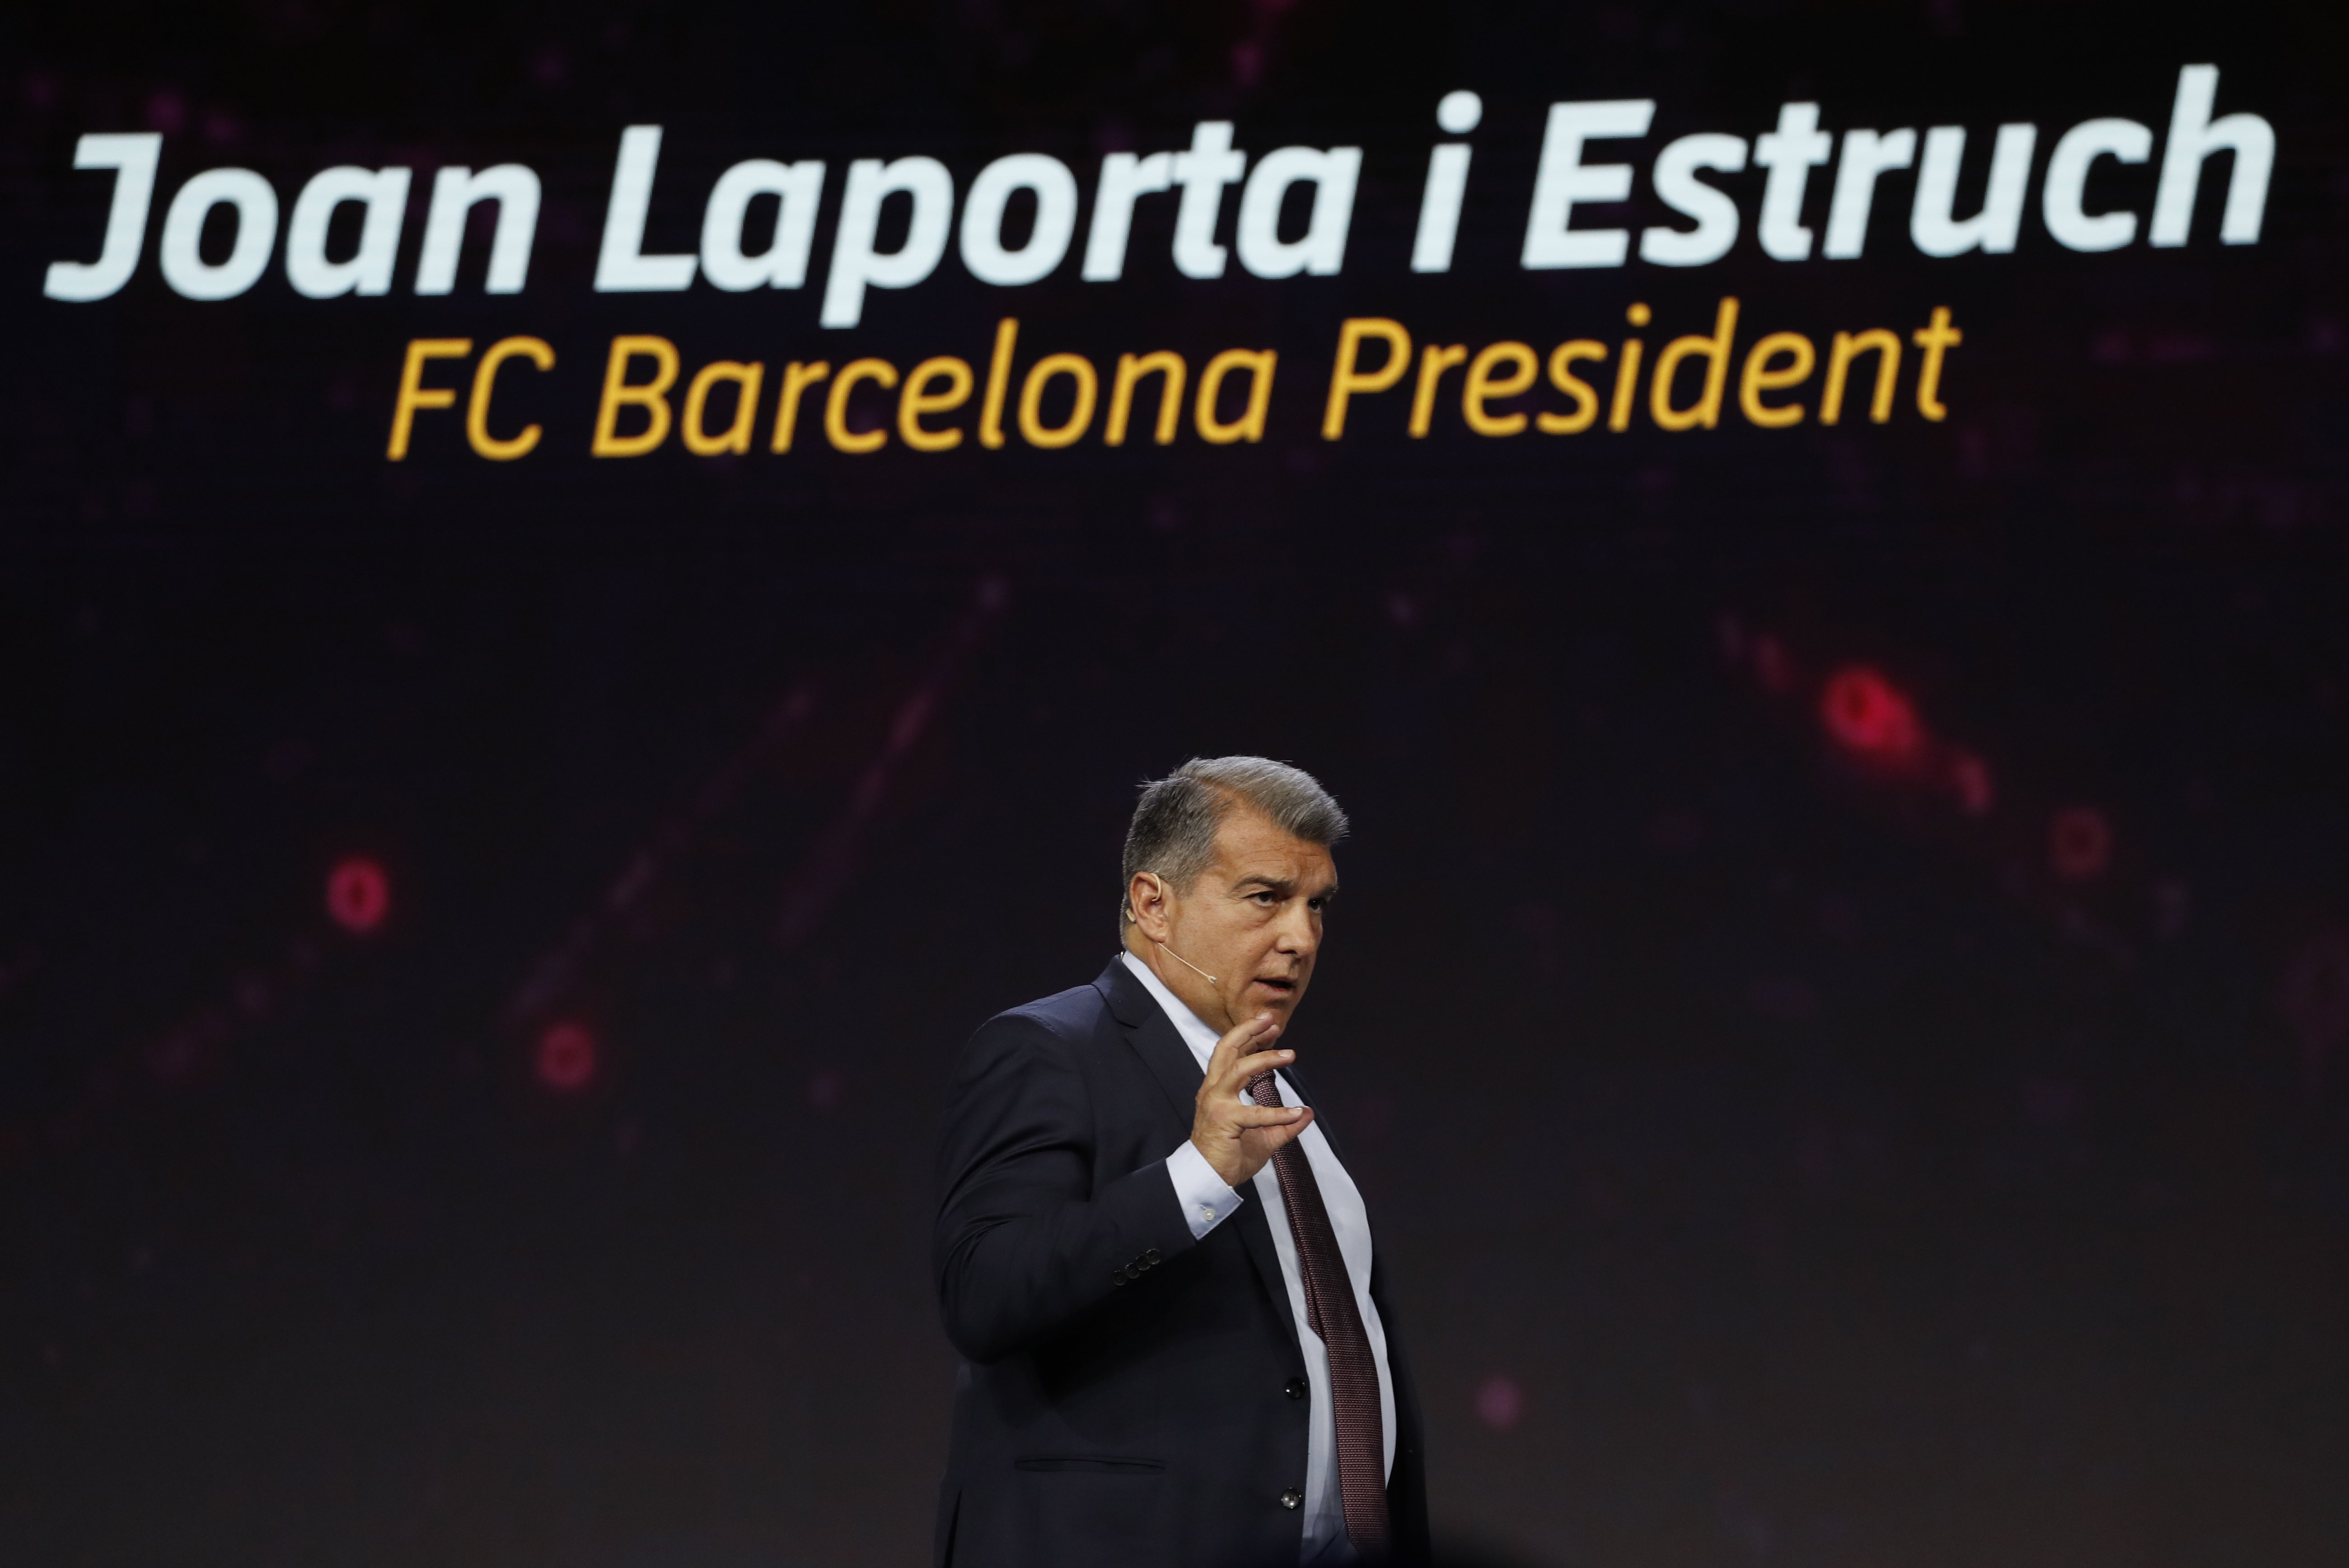 Si las cosas se ponen feas para Joan Laporta hay un sacrificio sobre la mesa, aunque haría mucho daño al Barça